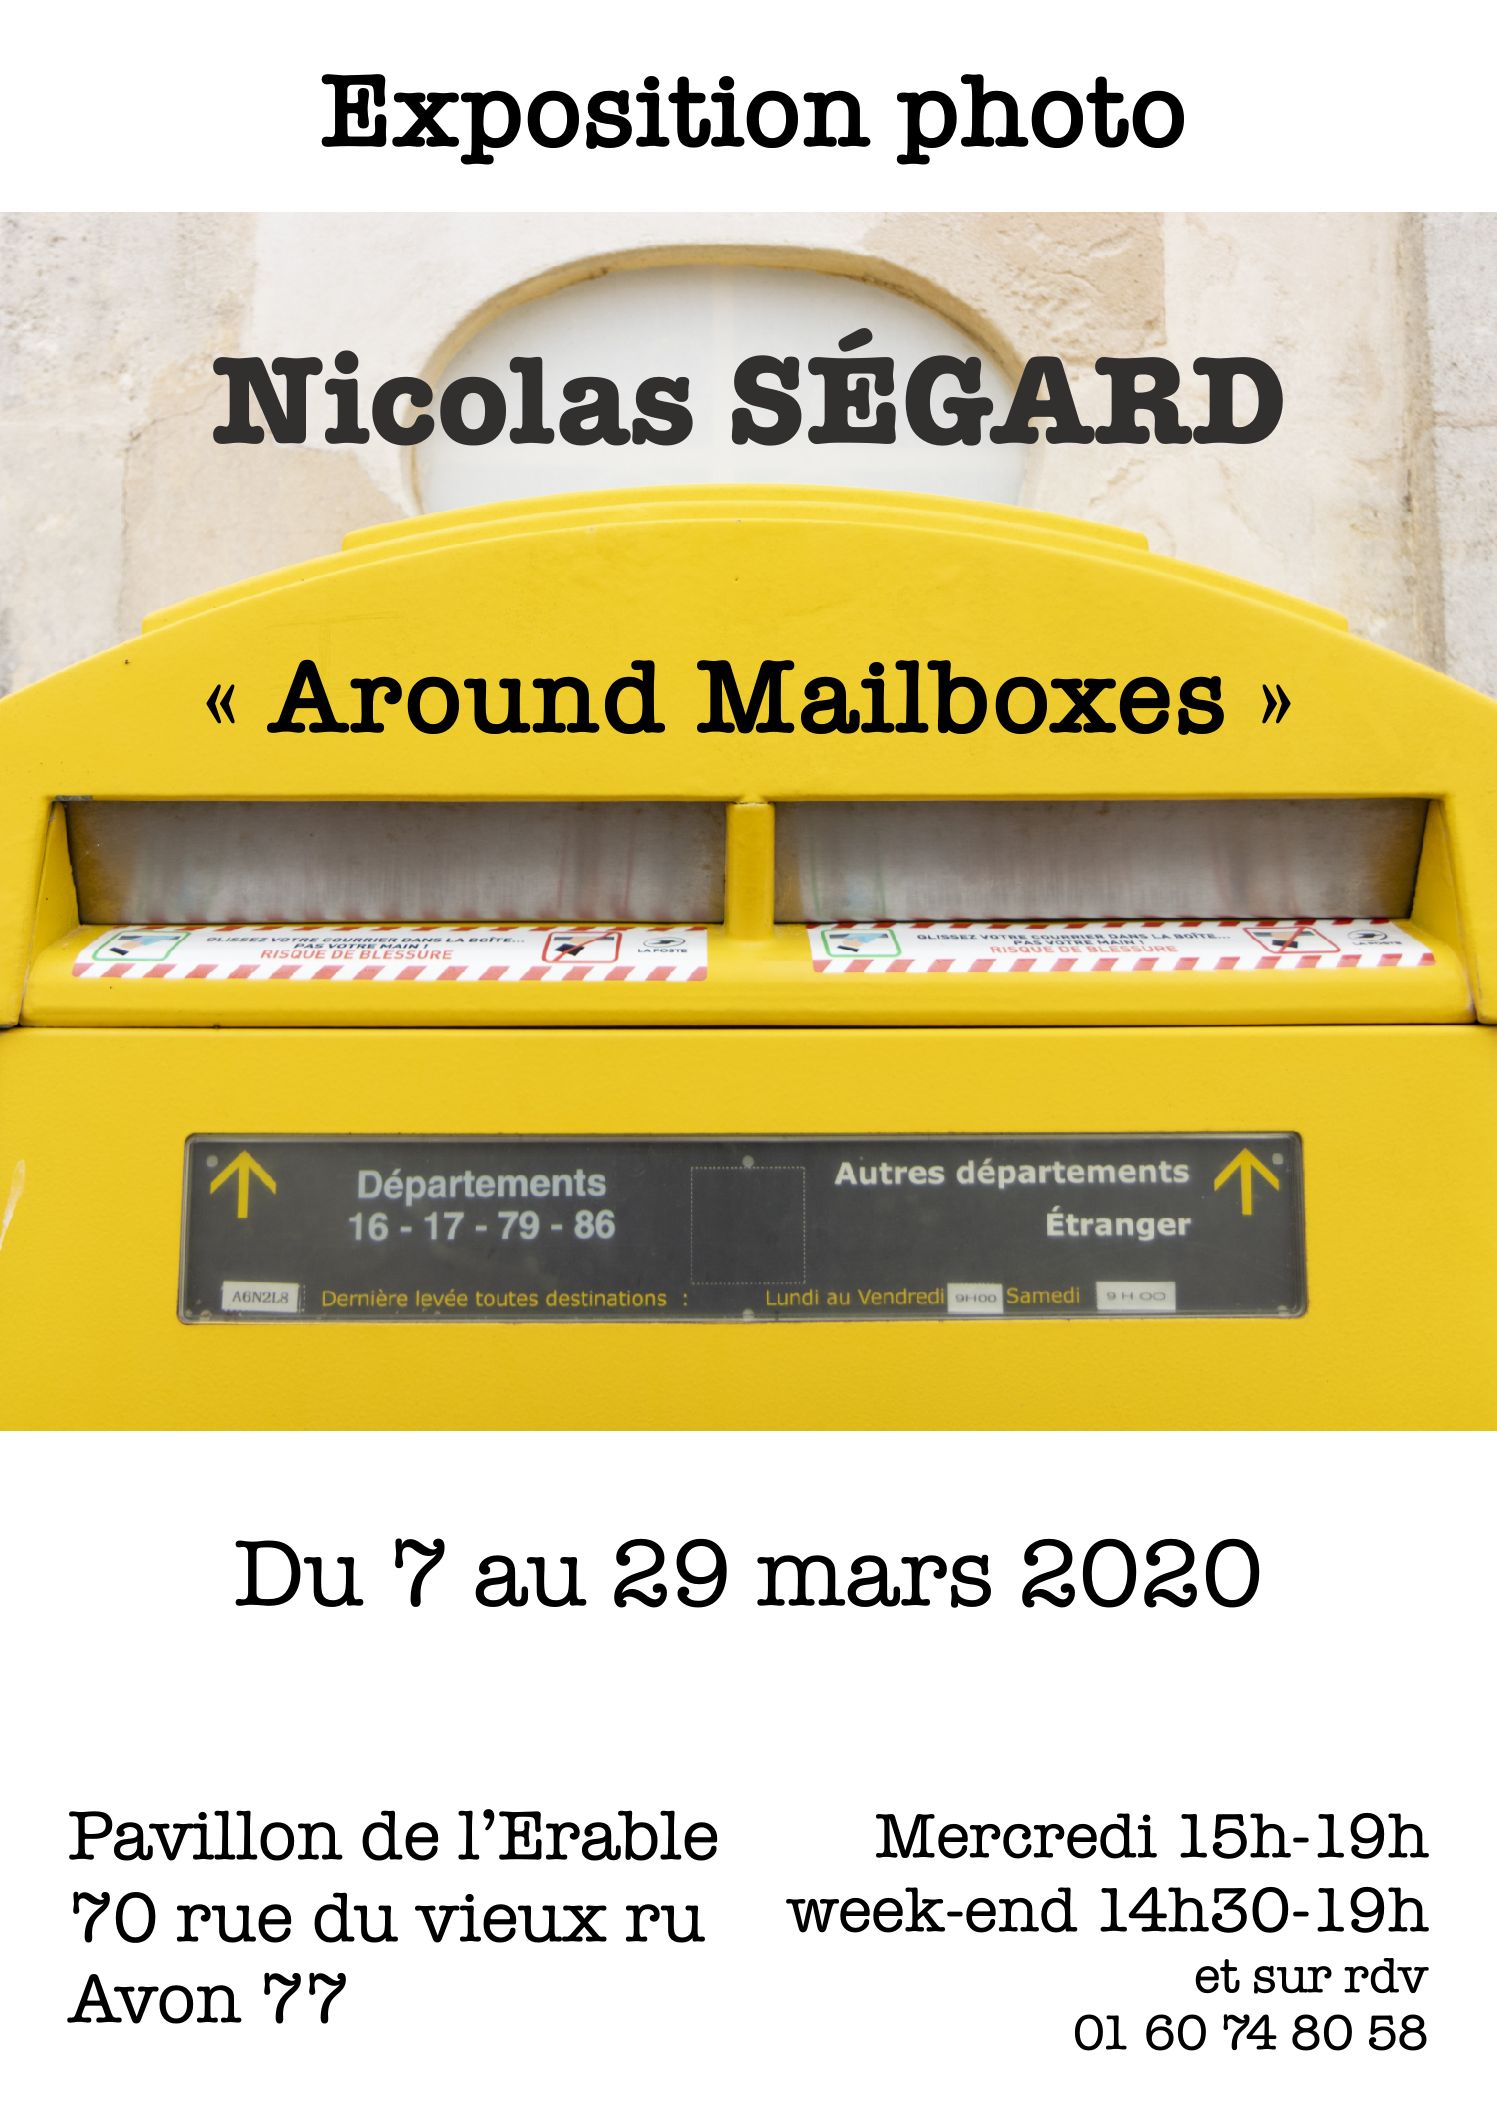 Comment se prépare l’expo photo “Around Mailboxes”?